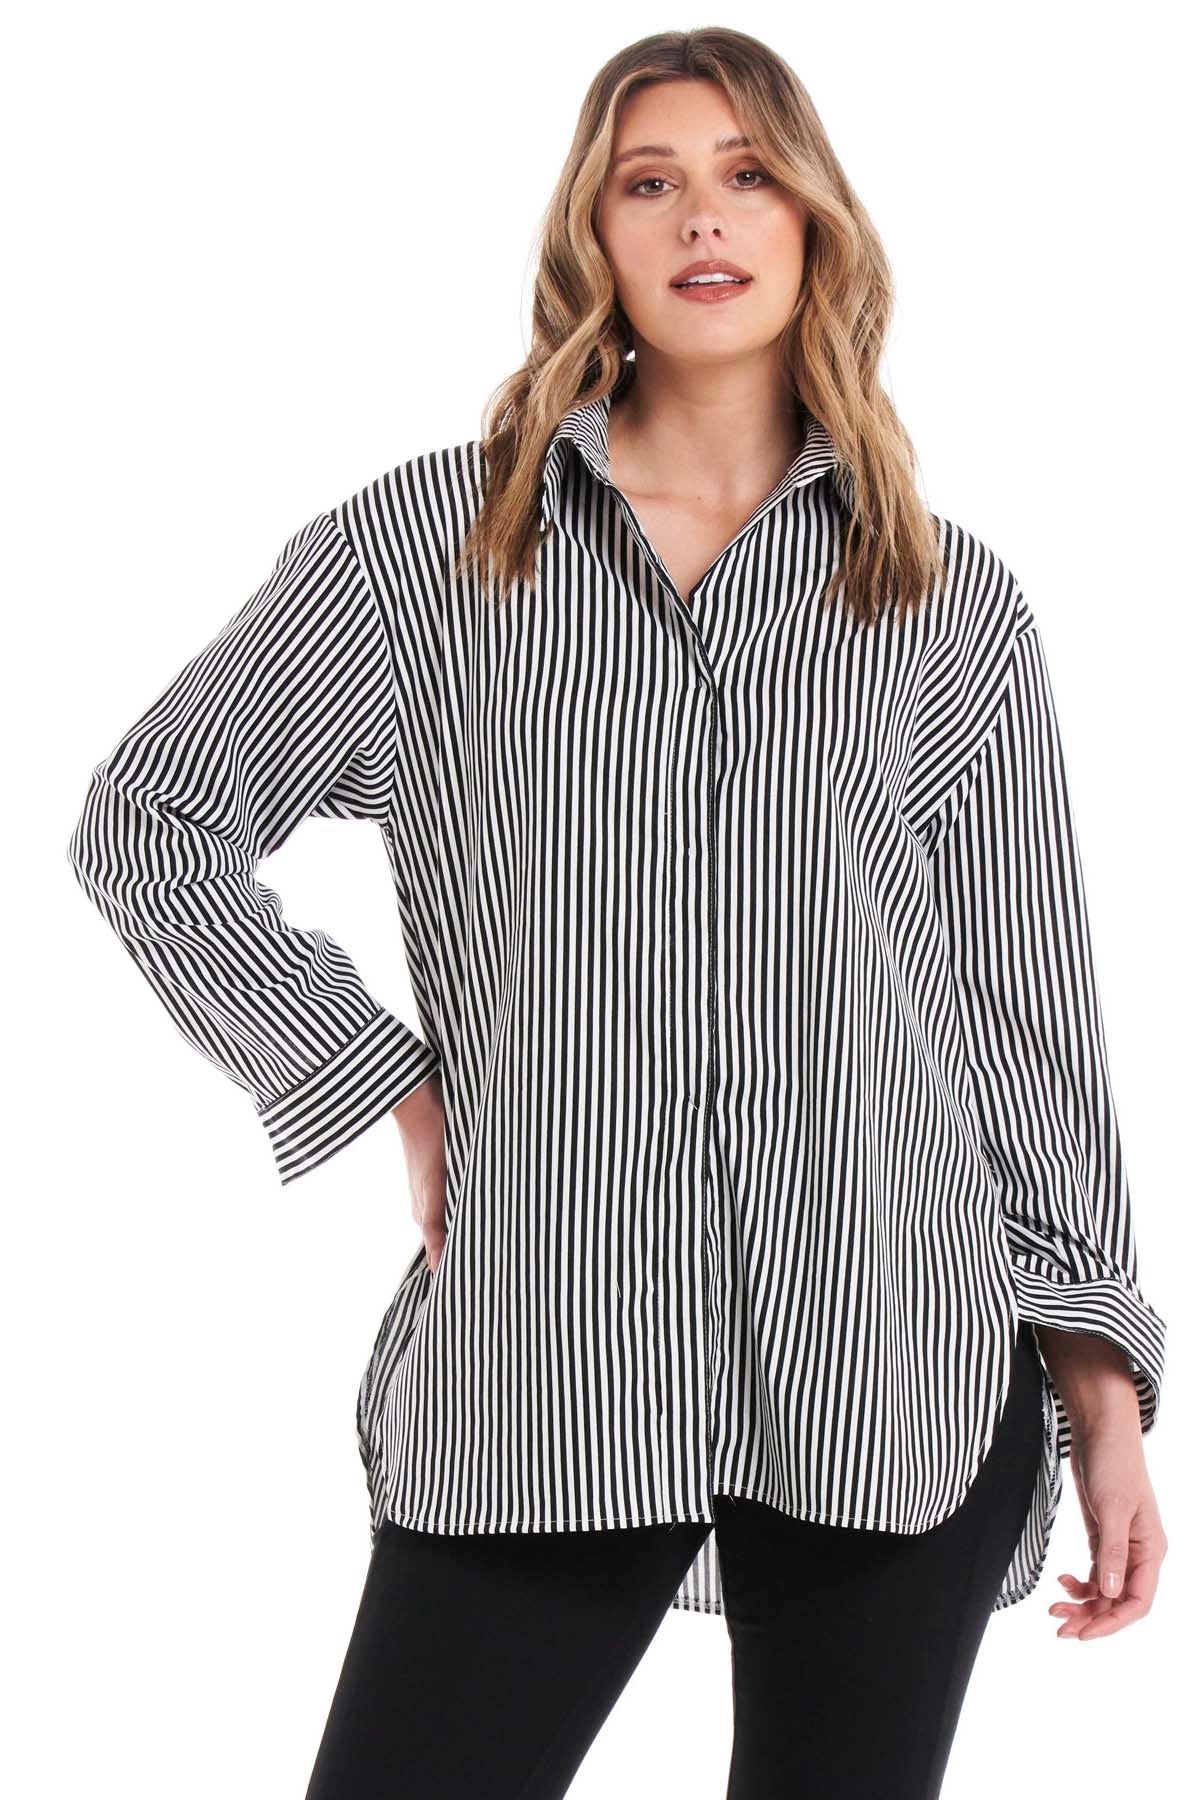 Betty Basics Cleo Shirt in Black Thick Stripe - Hey Sara